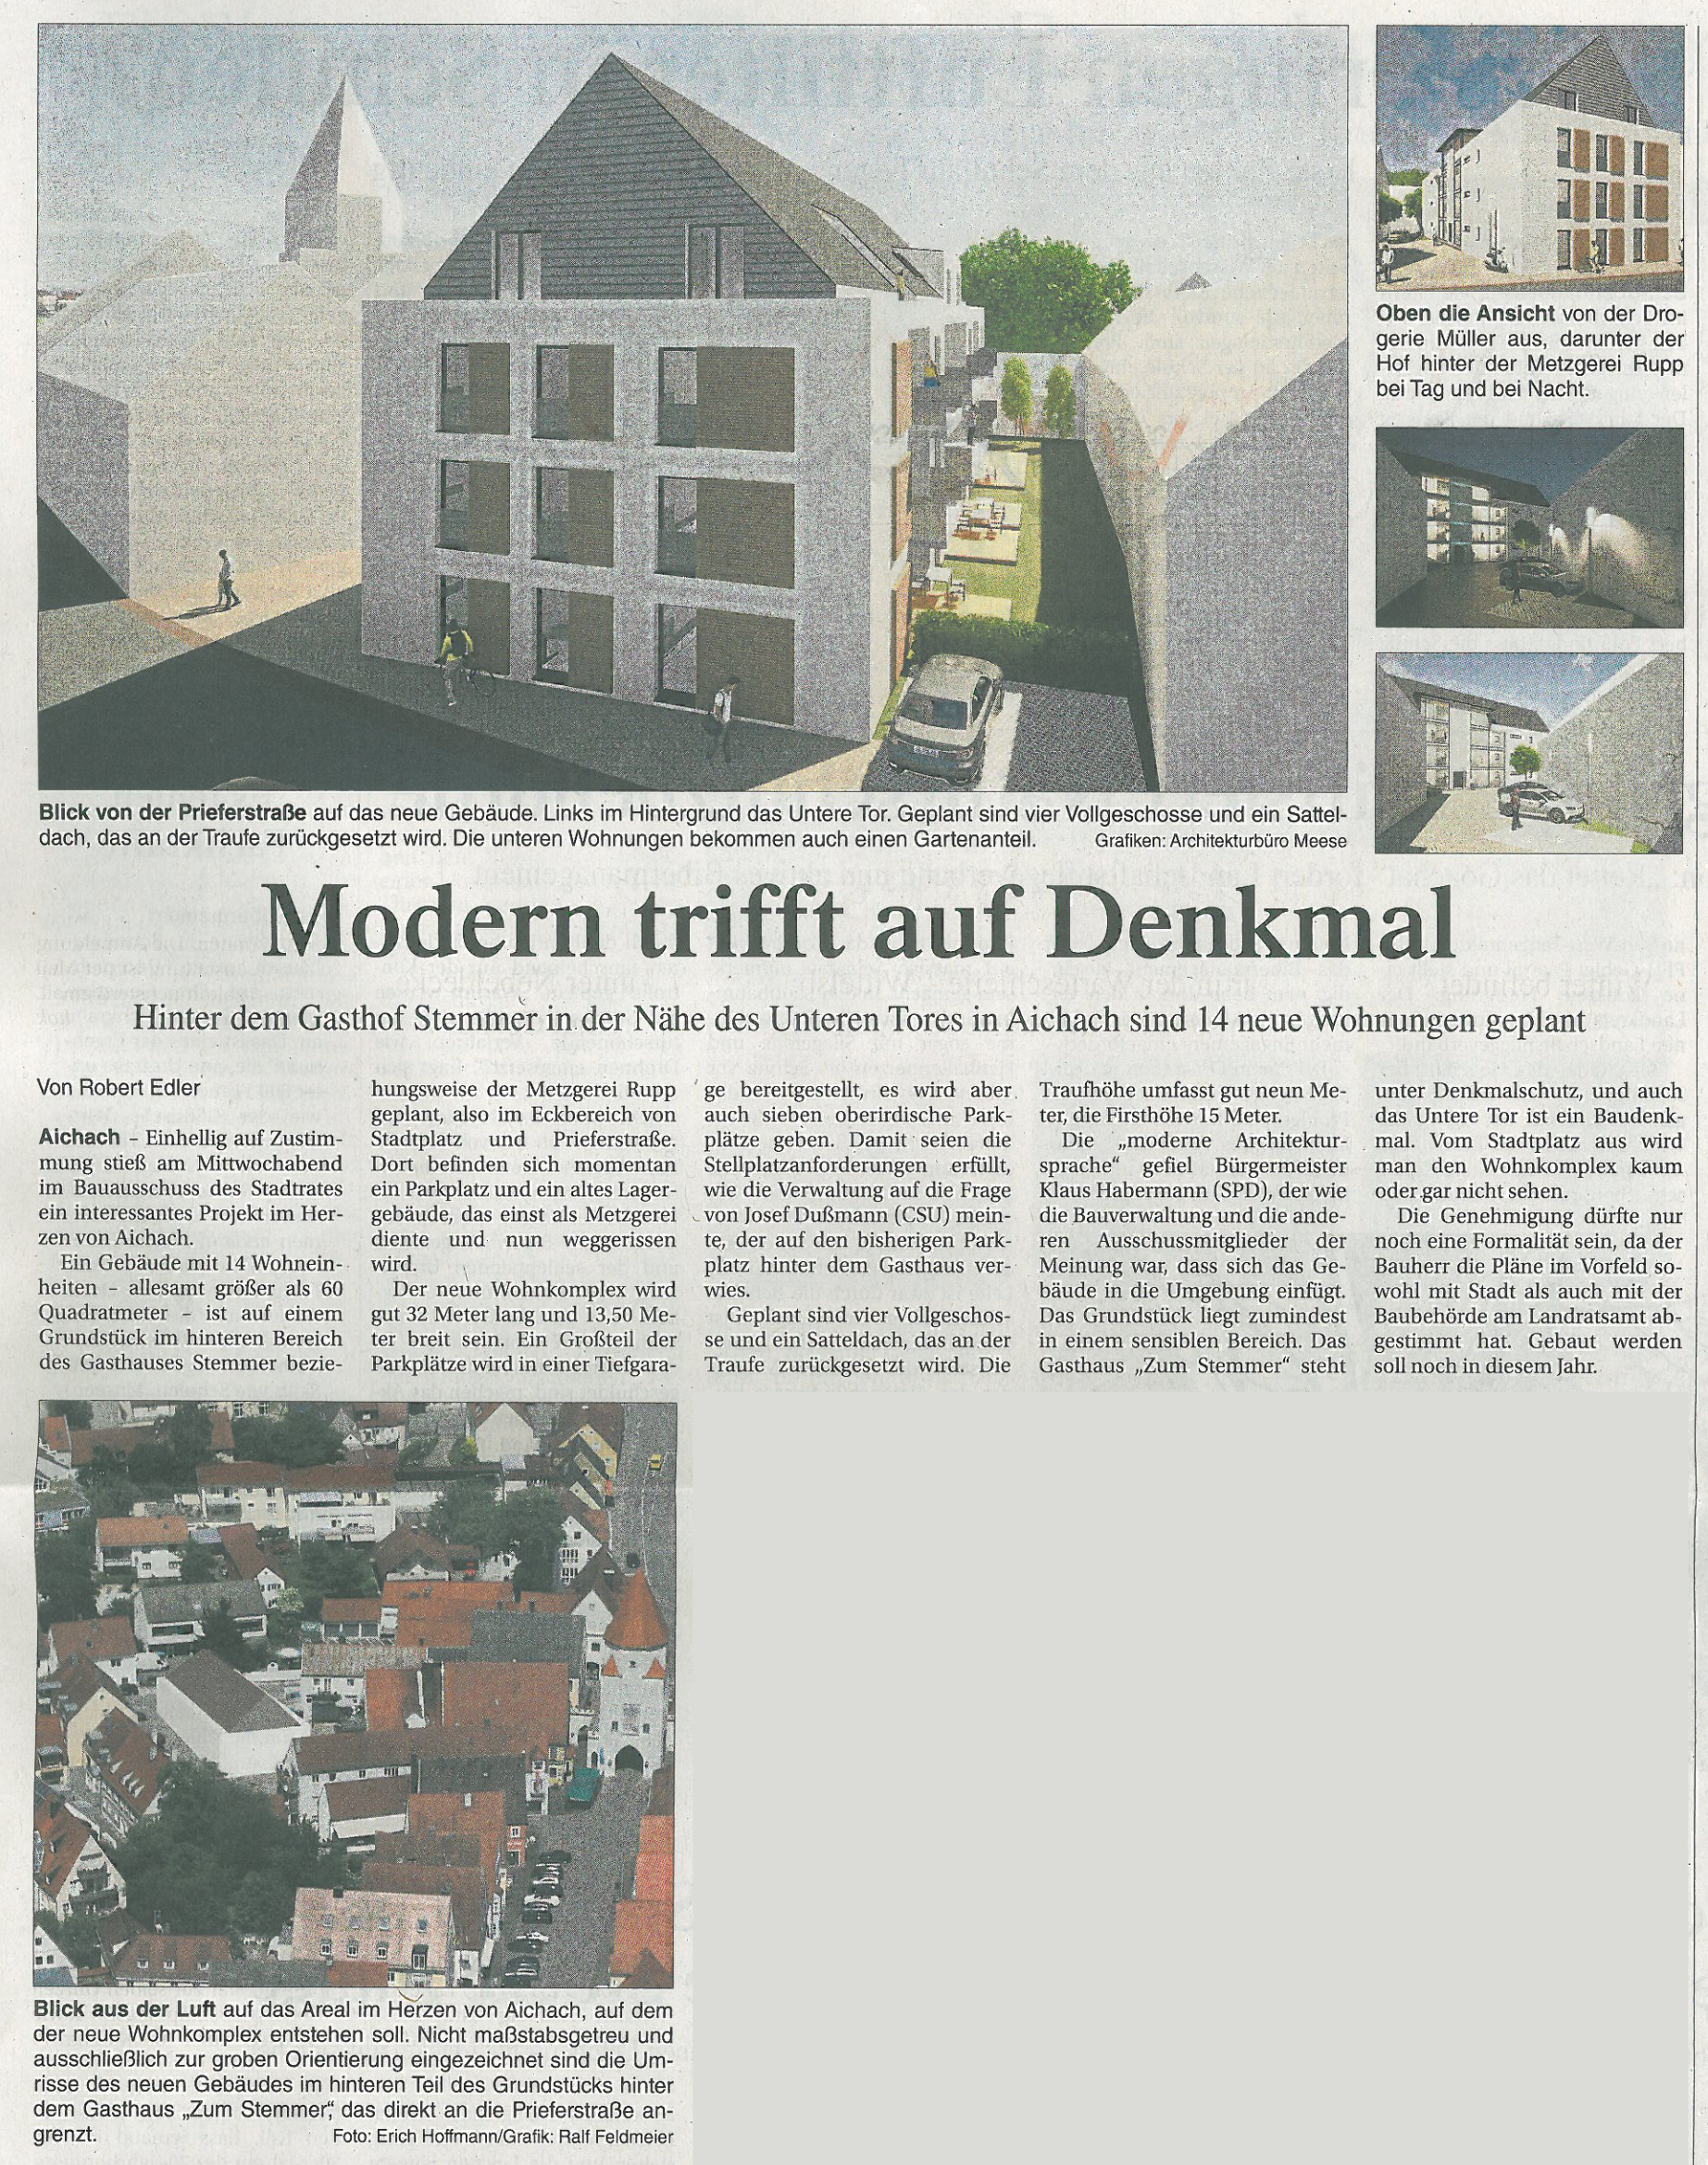 Planung eines Mehrfamilienhauses mit 14 Wohnungen in der AIchacher Altstadt - Artikel in der Aichacher Zeitung über die einhellige Zustimmung des Bauausschusses zum Bauantrag. <br />
